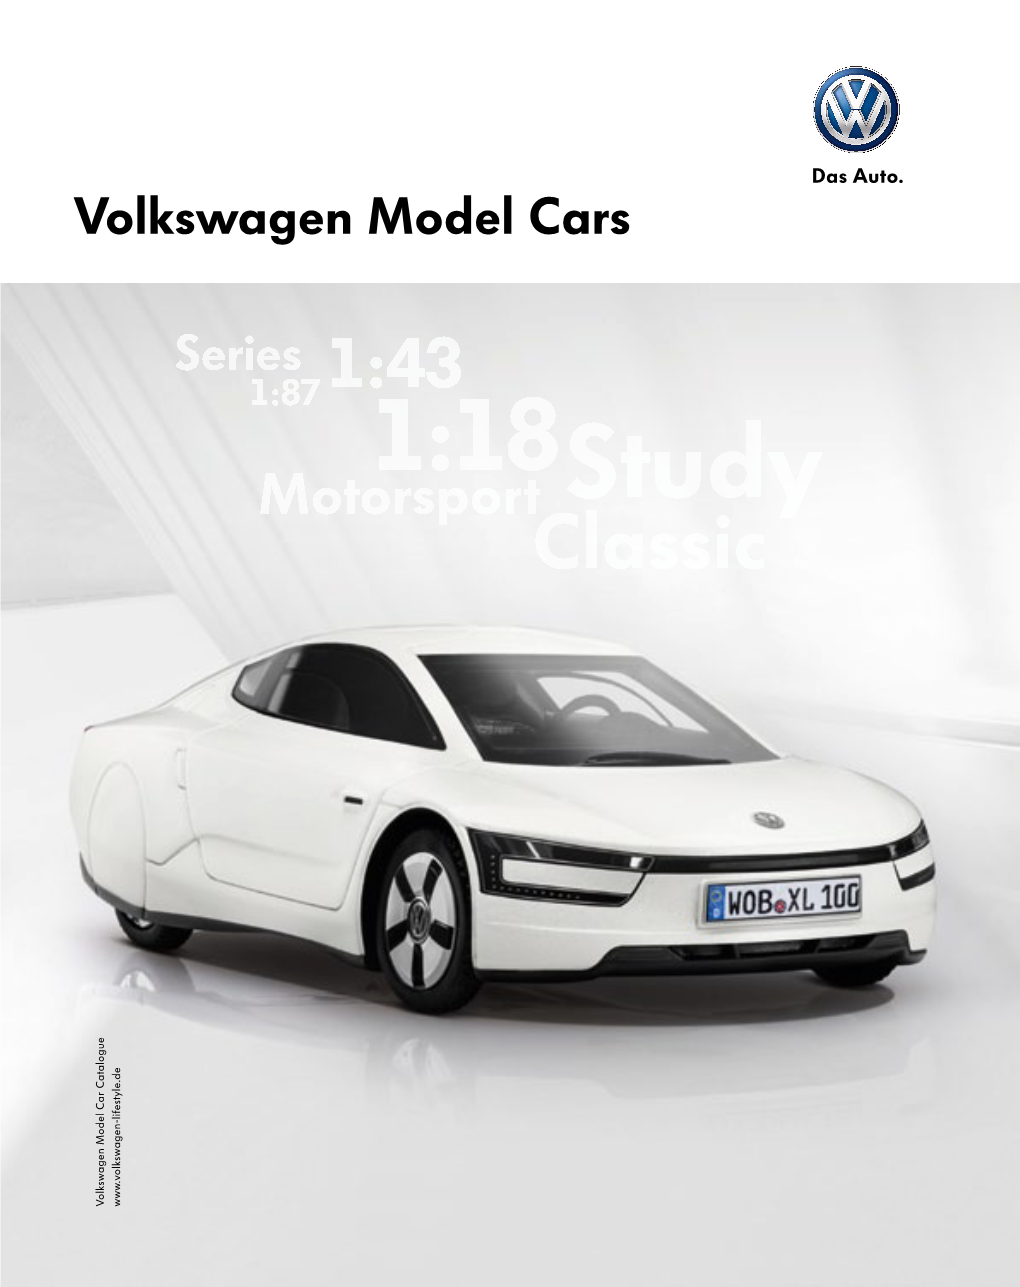 Volkswagen Model Cars Content 5 XL1